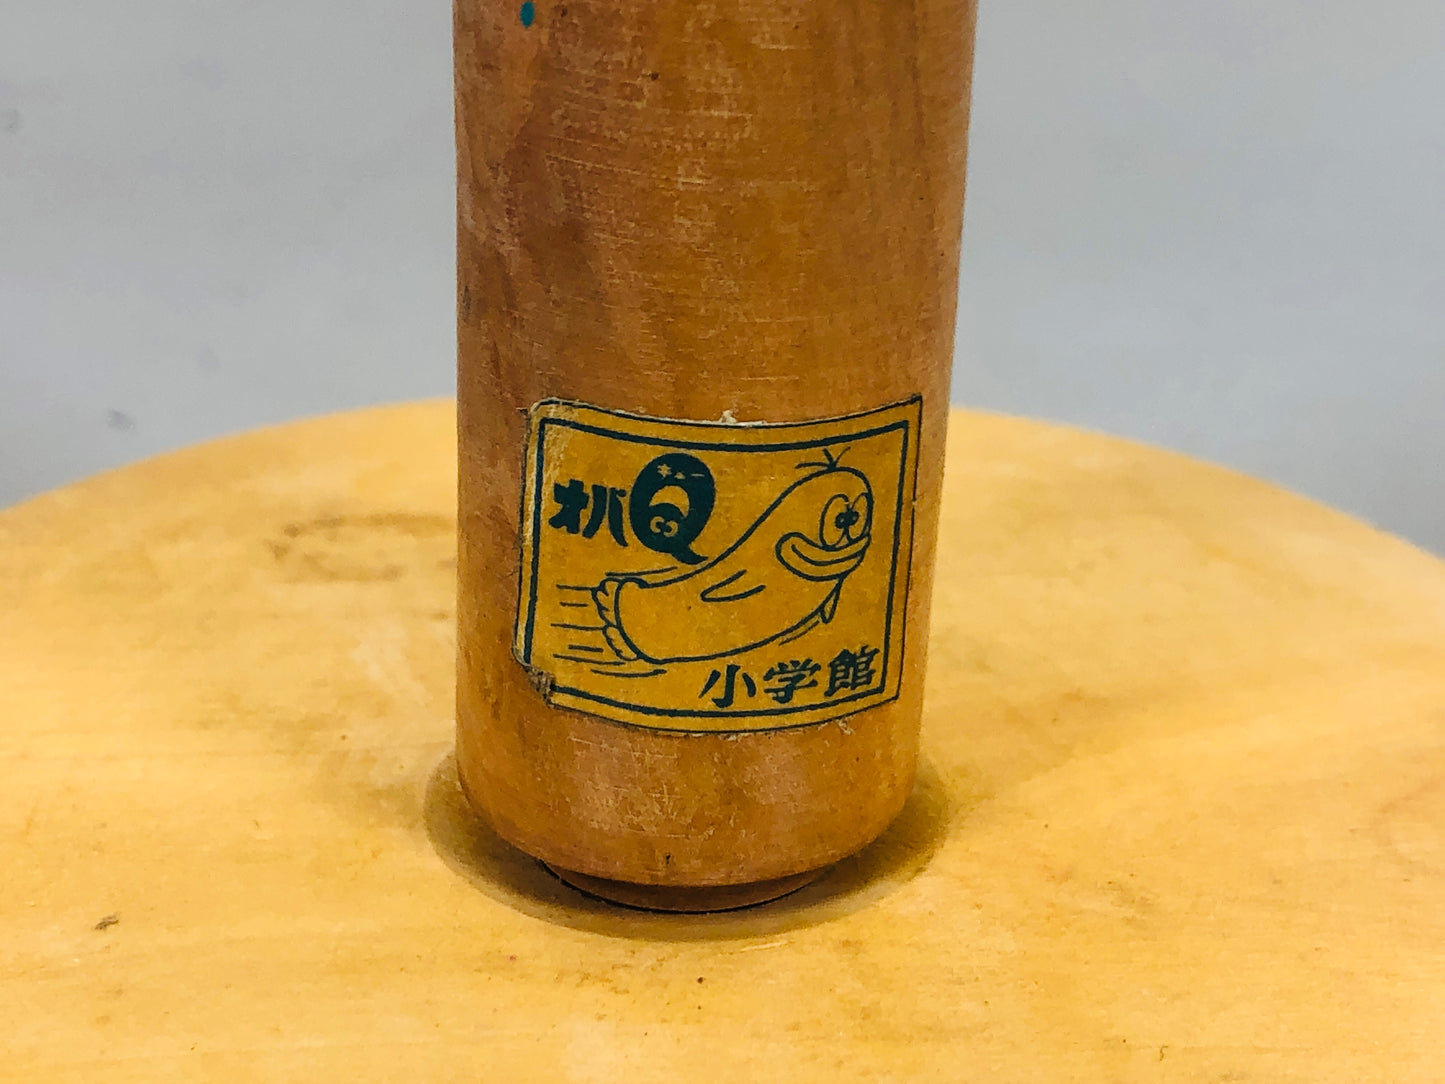 Y5498 TOY Obake no Q-Taro Oba-Q ring toss game box Japan antique vintage robot